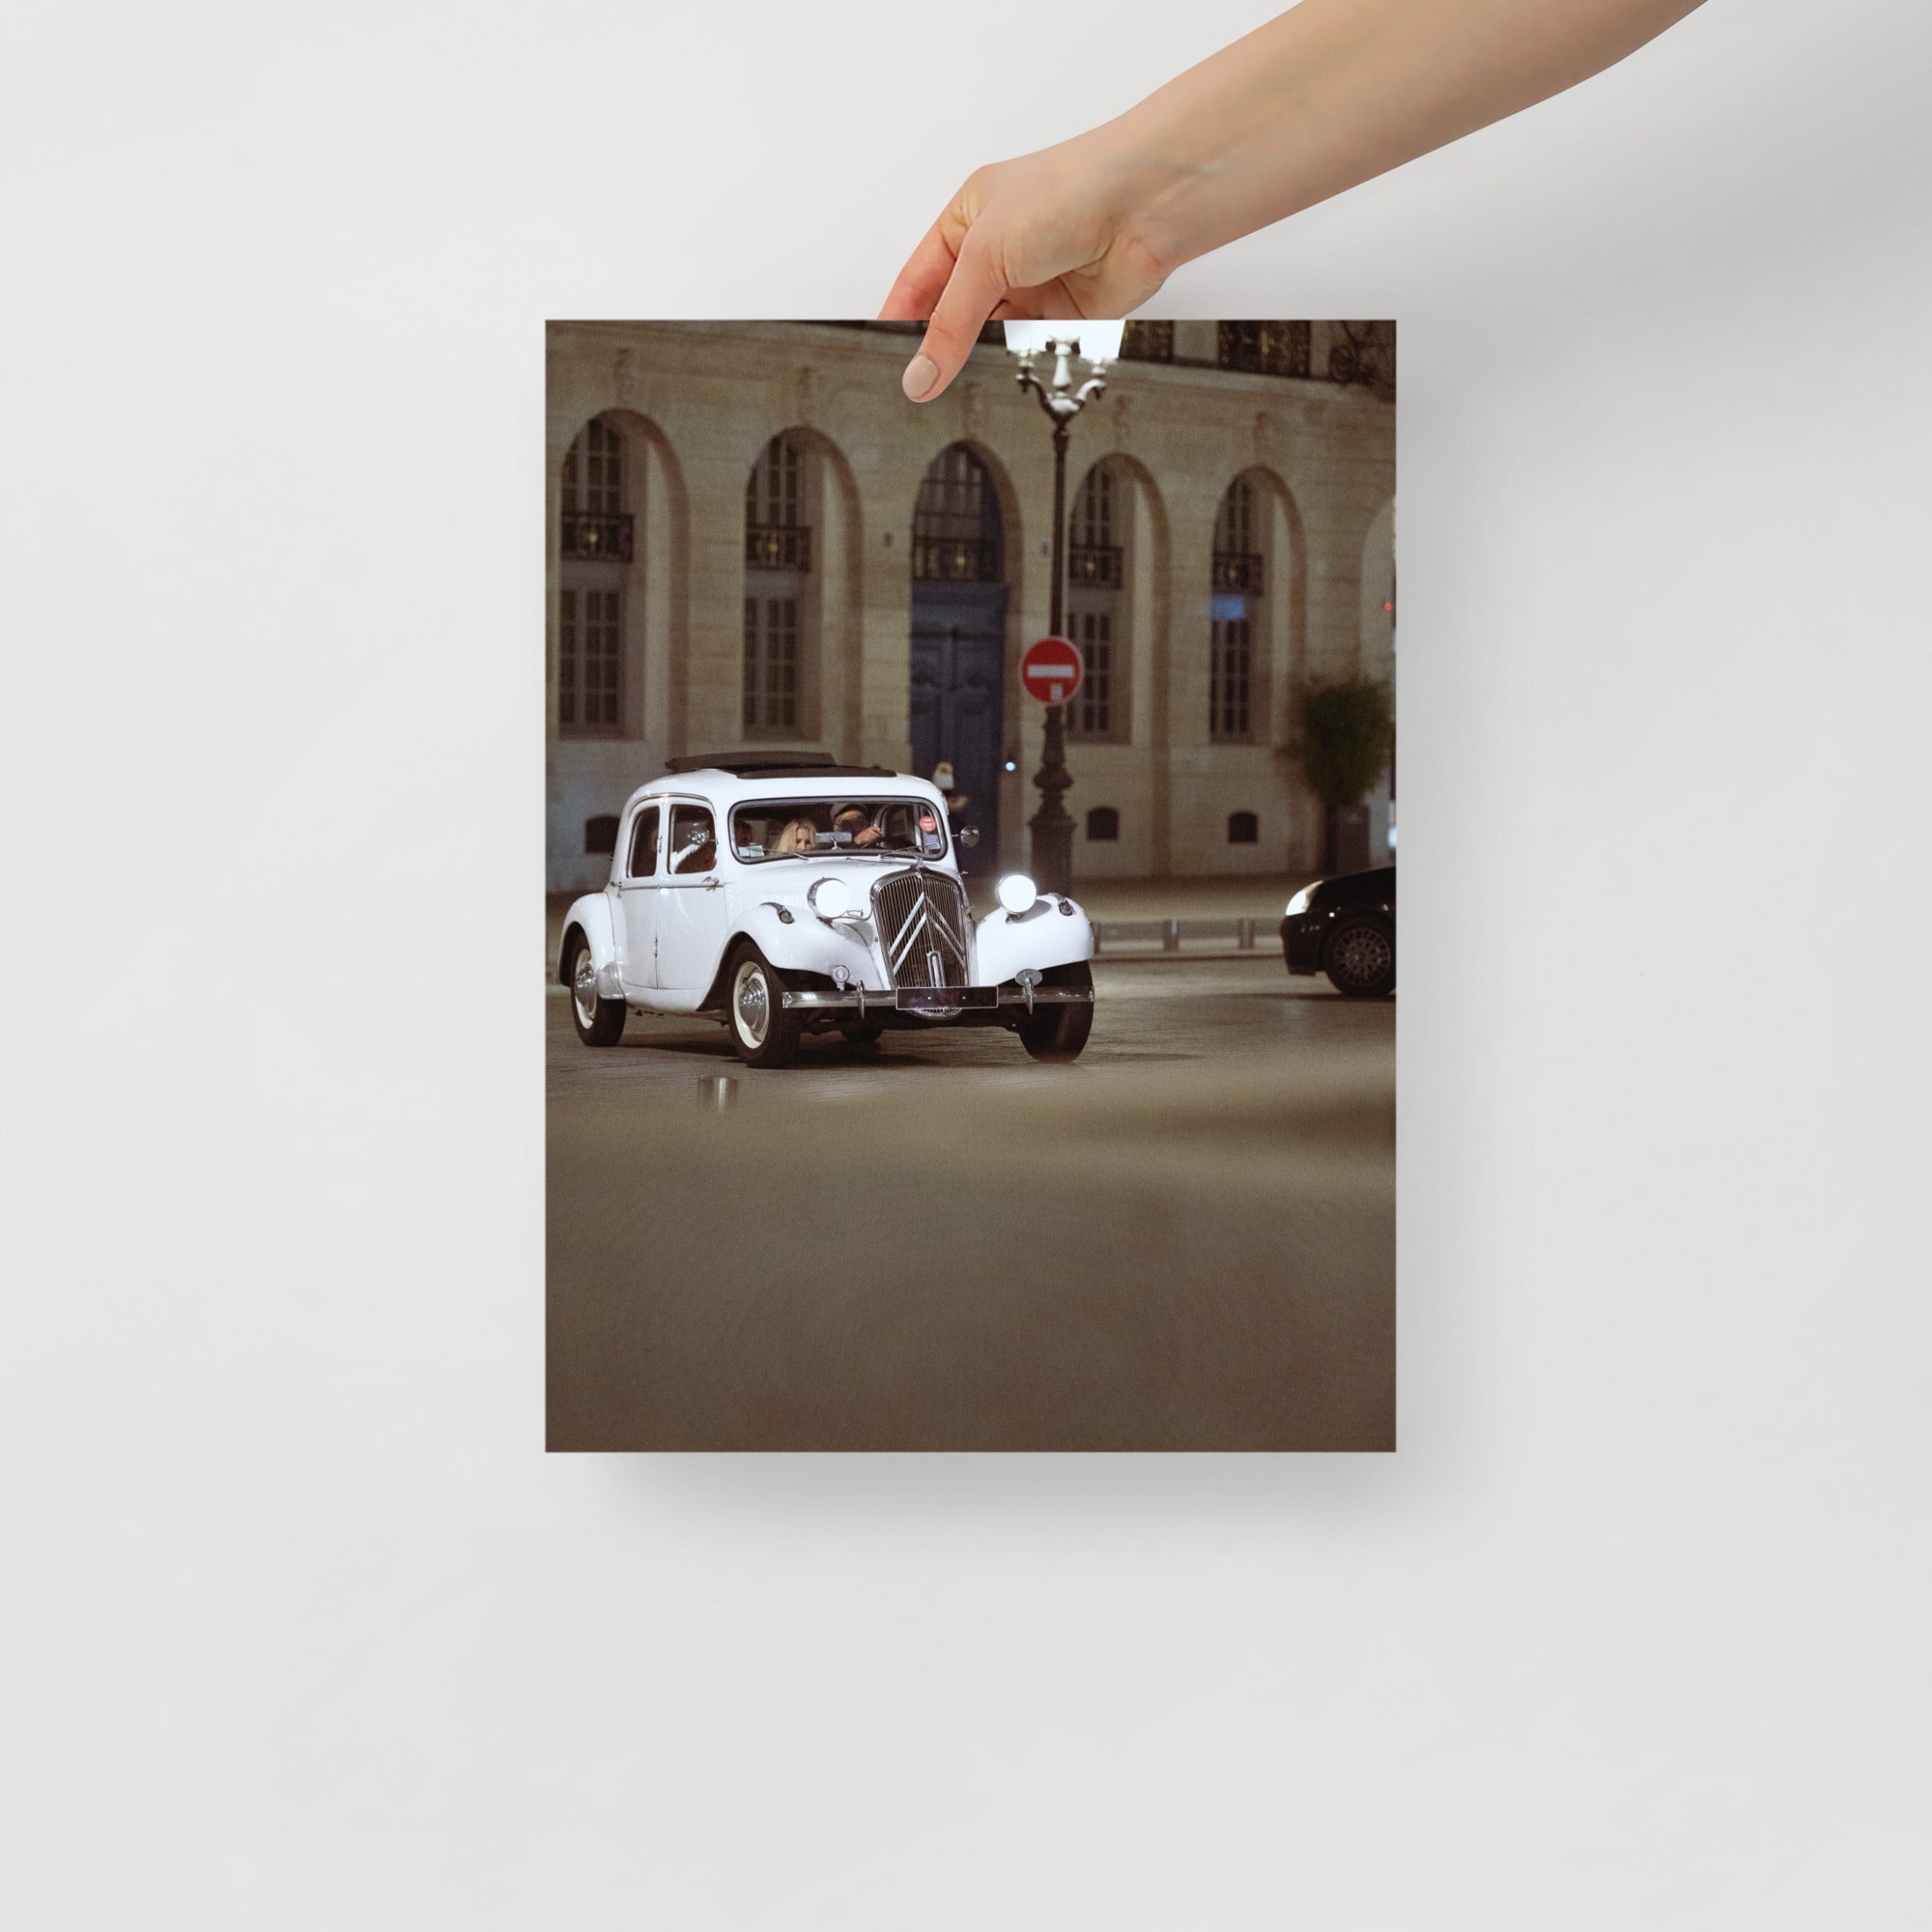 Poster mural - Citroën traction – Photographie de vielle voiture – Poster photo, poster XXL, Photo d’art, photographie murale et des posters muraux des photographies de rue unique au monde. La boutique de posters créée par un Photographe français.